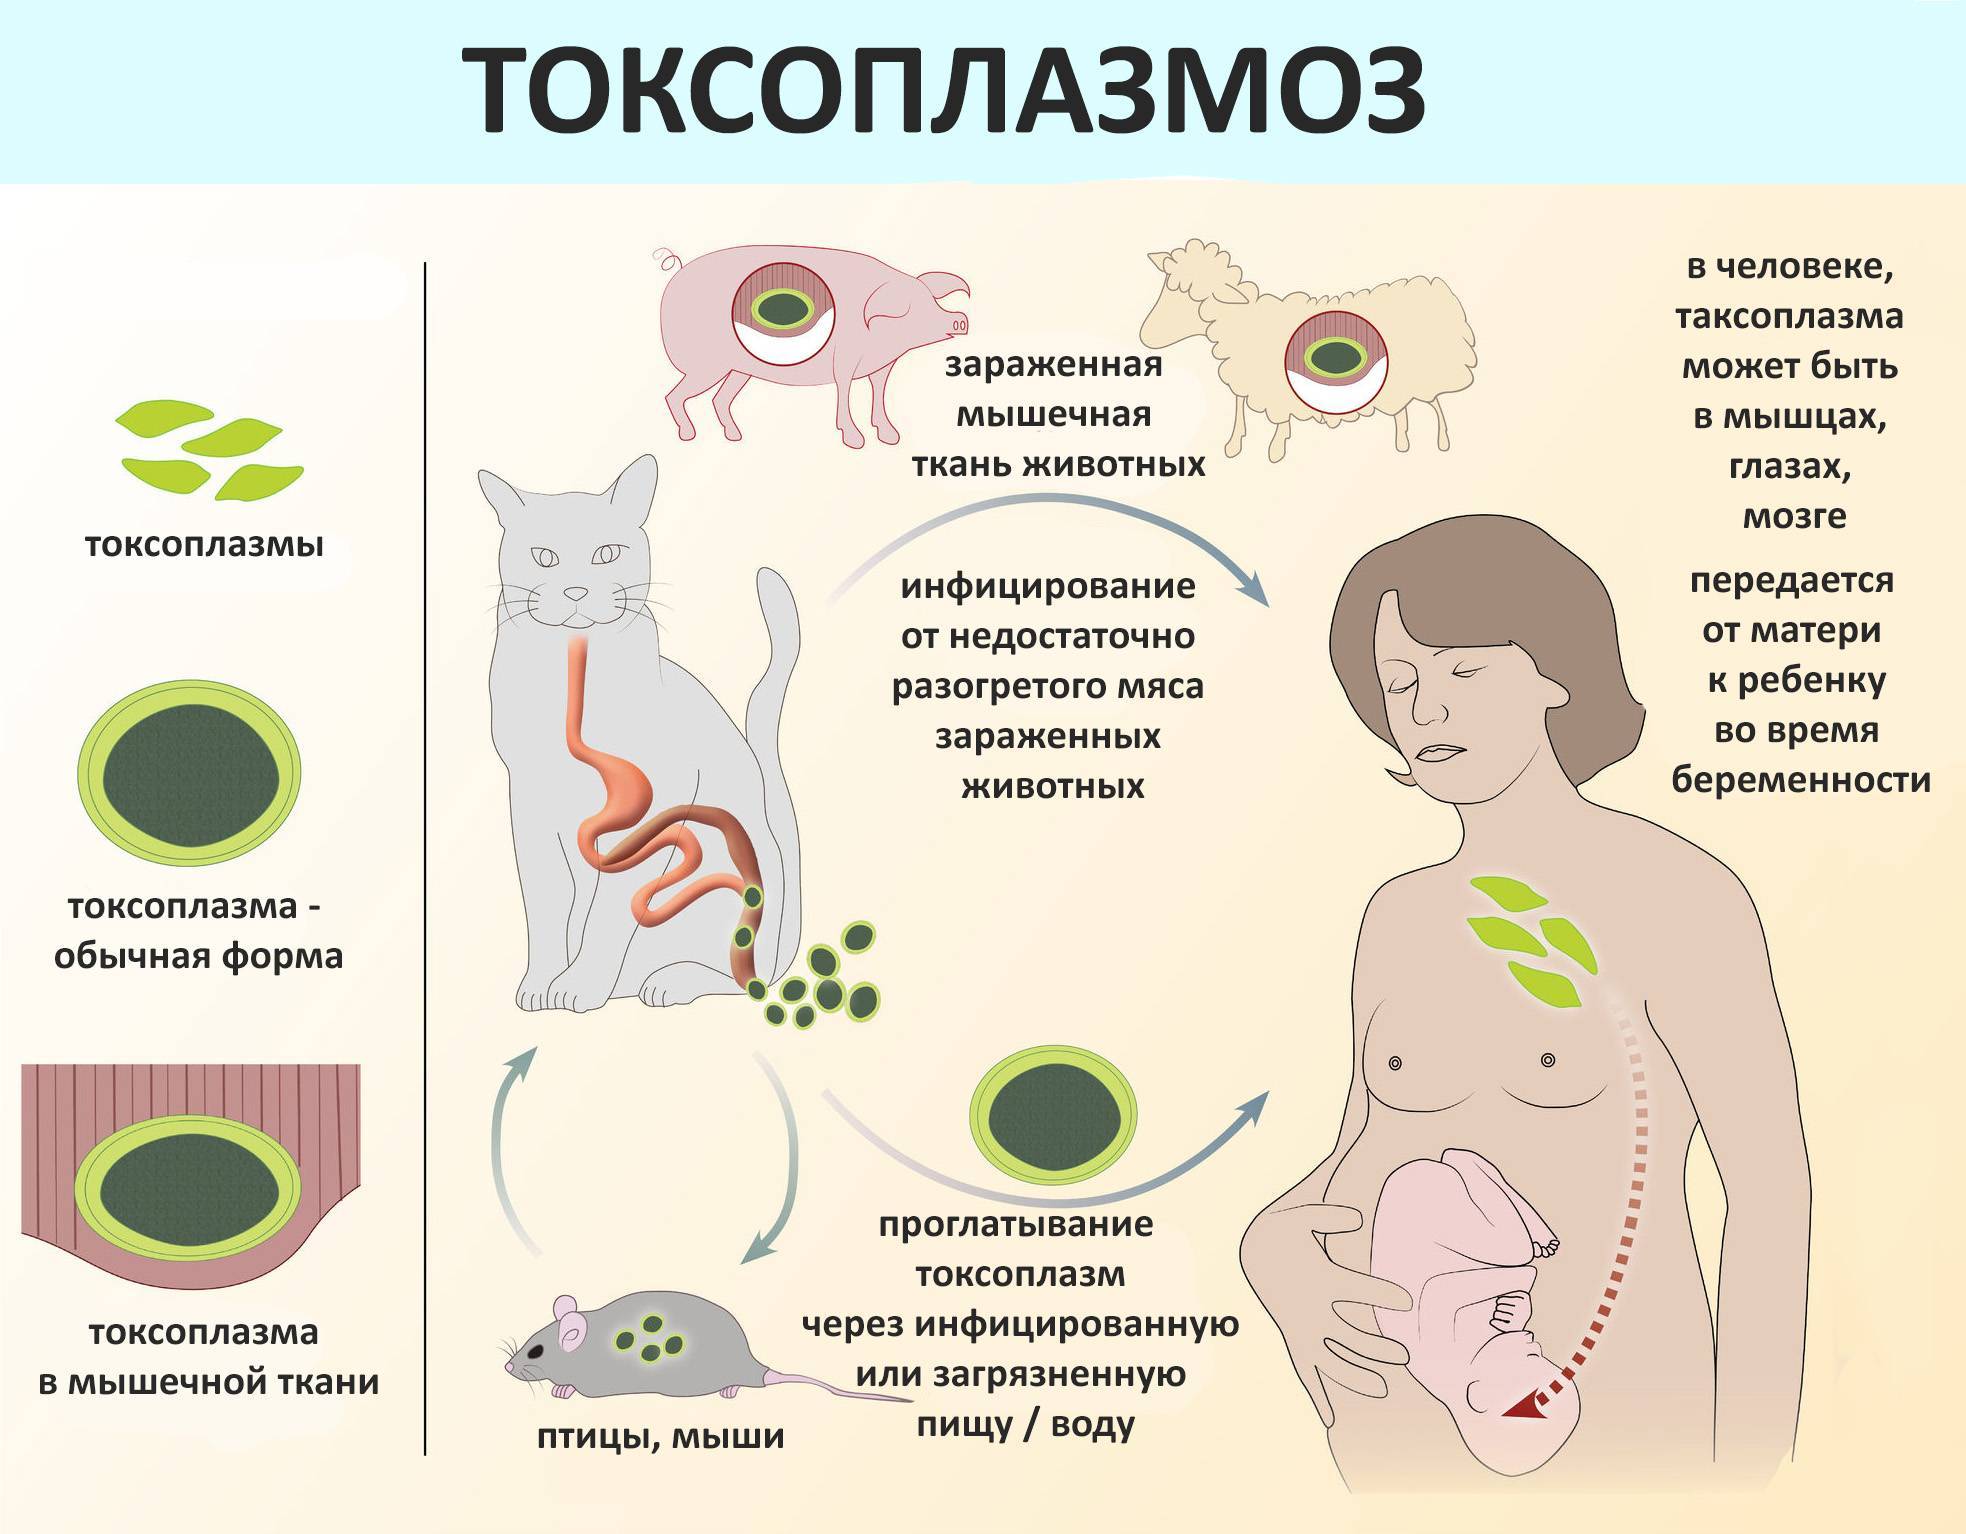 Токсоплазмоз у детей - симптомы болезни, профилактика и лечение токсоплазмоза у детей, причины заболевания и его диагностика на eurolab